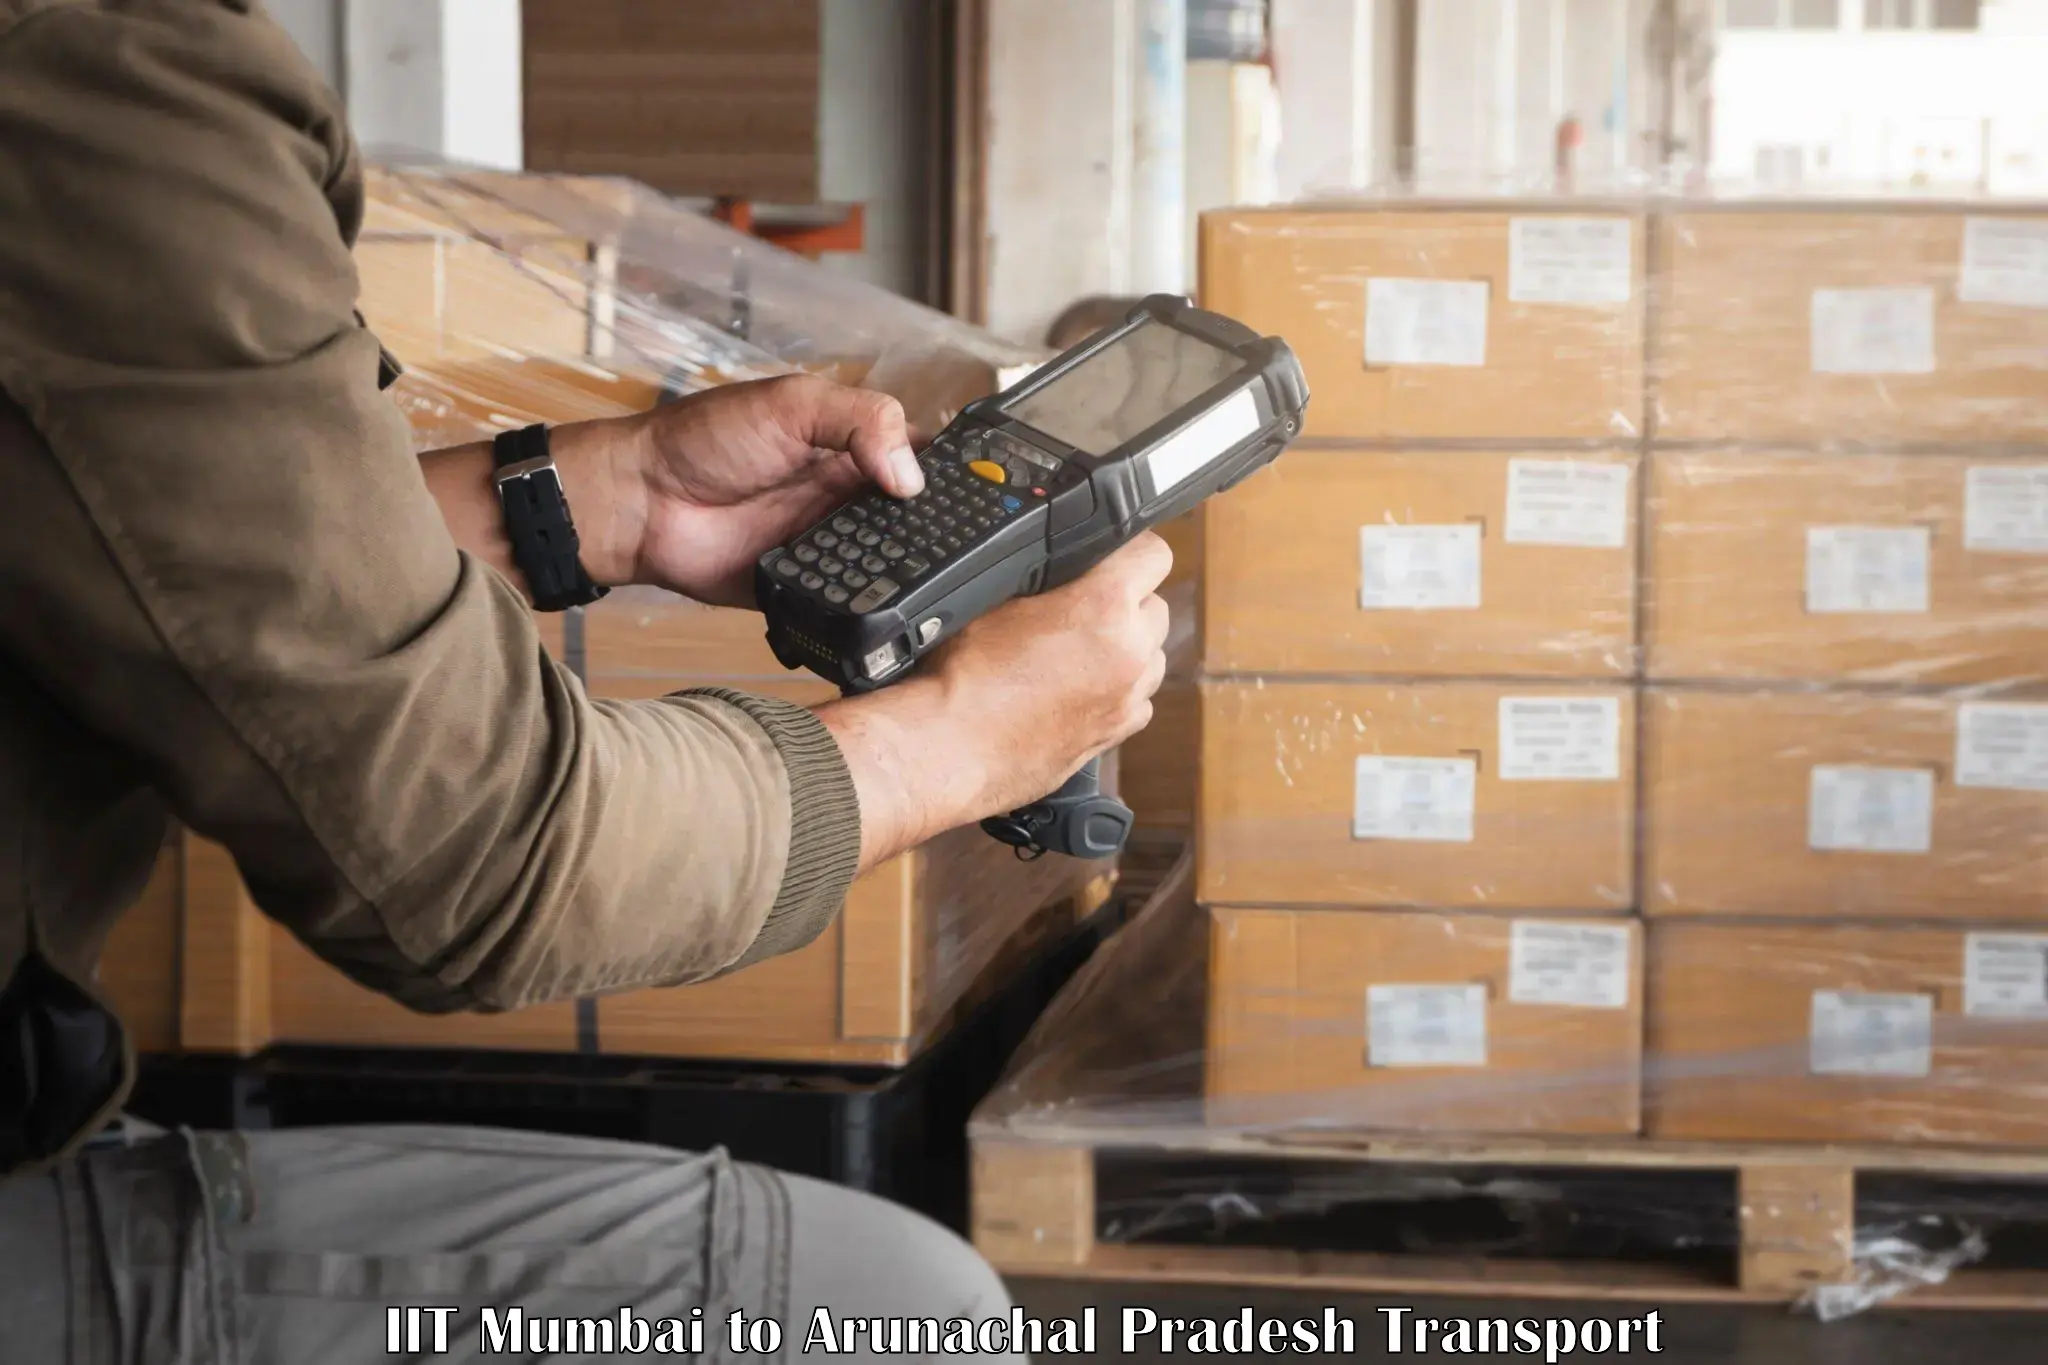 Two wheeler parcel service IIT Mumbai to Namsai